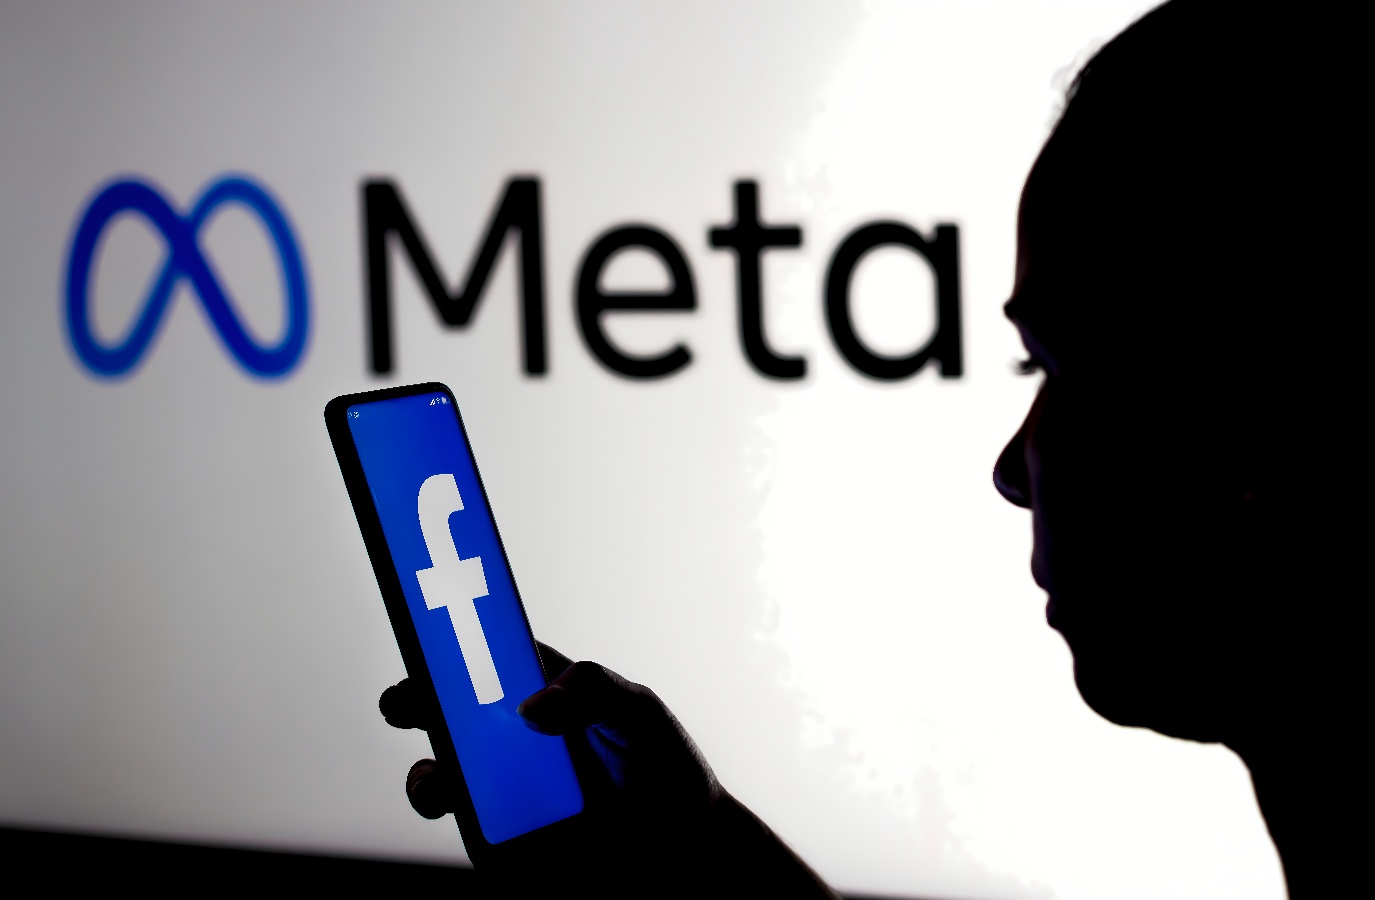 图片展示了一位剪影人物手持显示Facebook标志的手机，背景是亮起的“Meta”字样的标识。